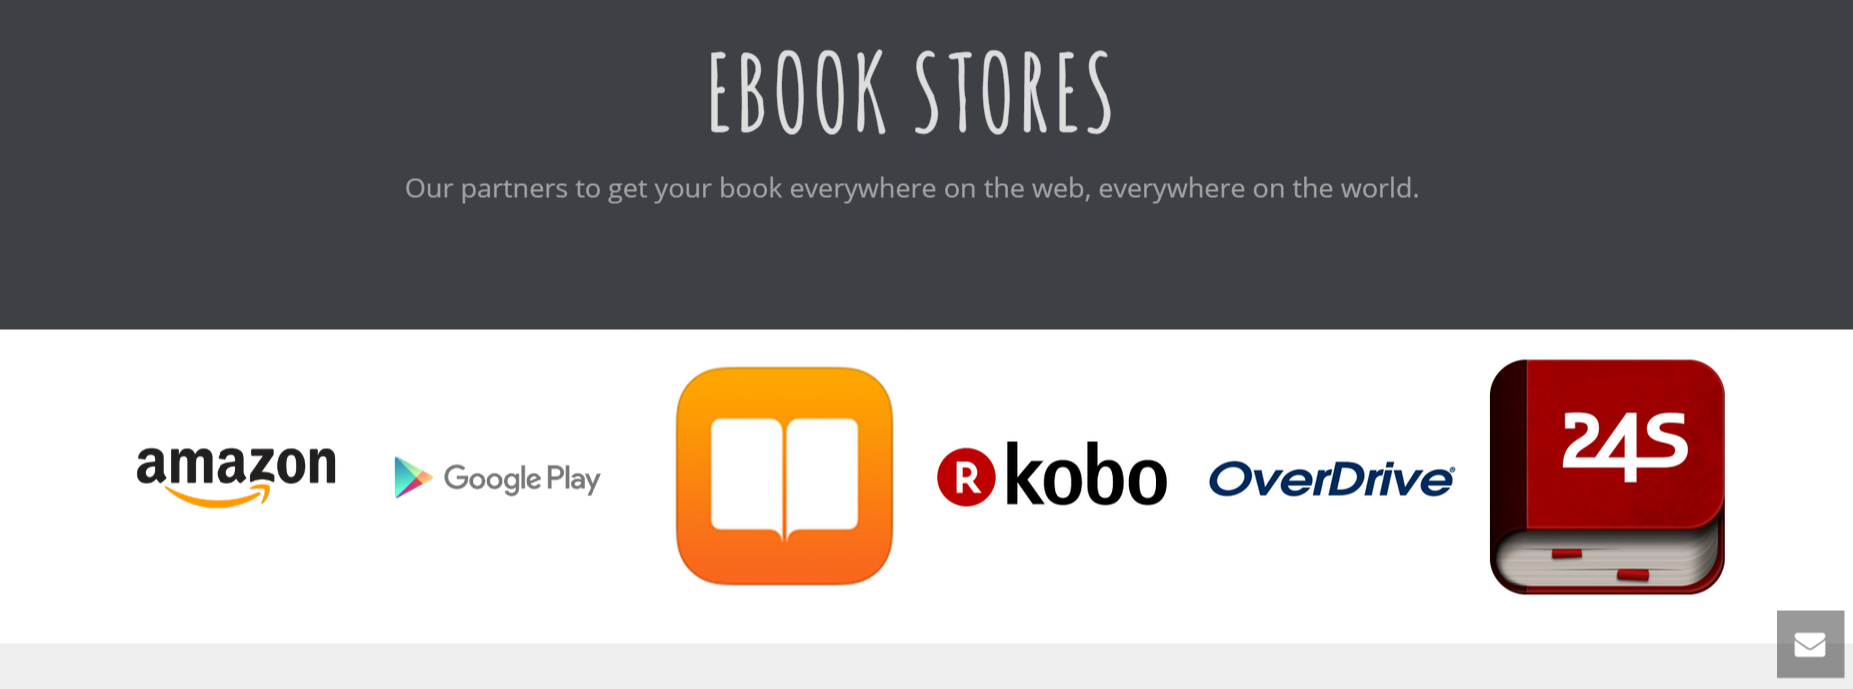 KDP o Streetlib? Quale servizio scegliere per pubblicare un eBook?